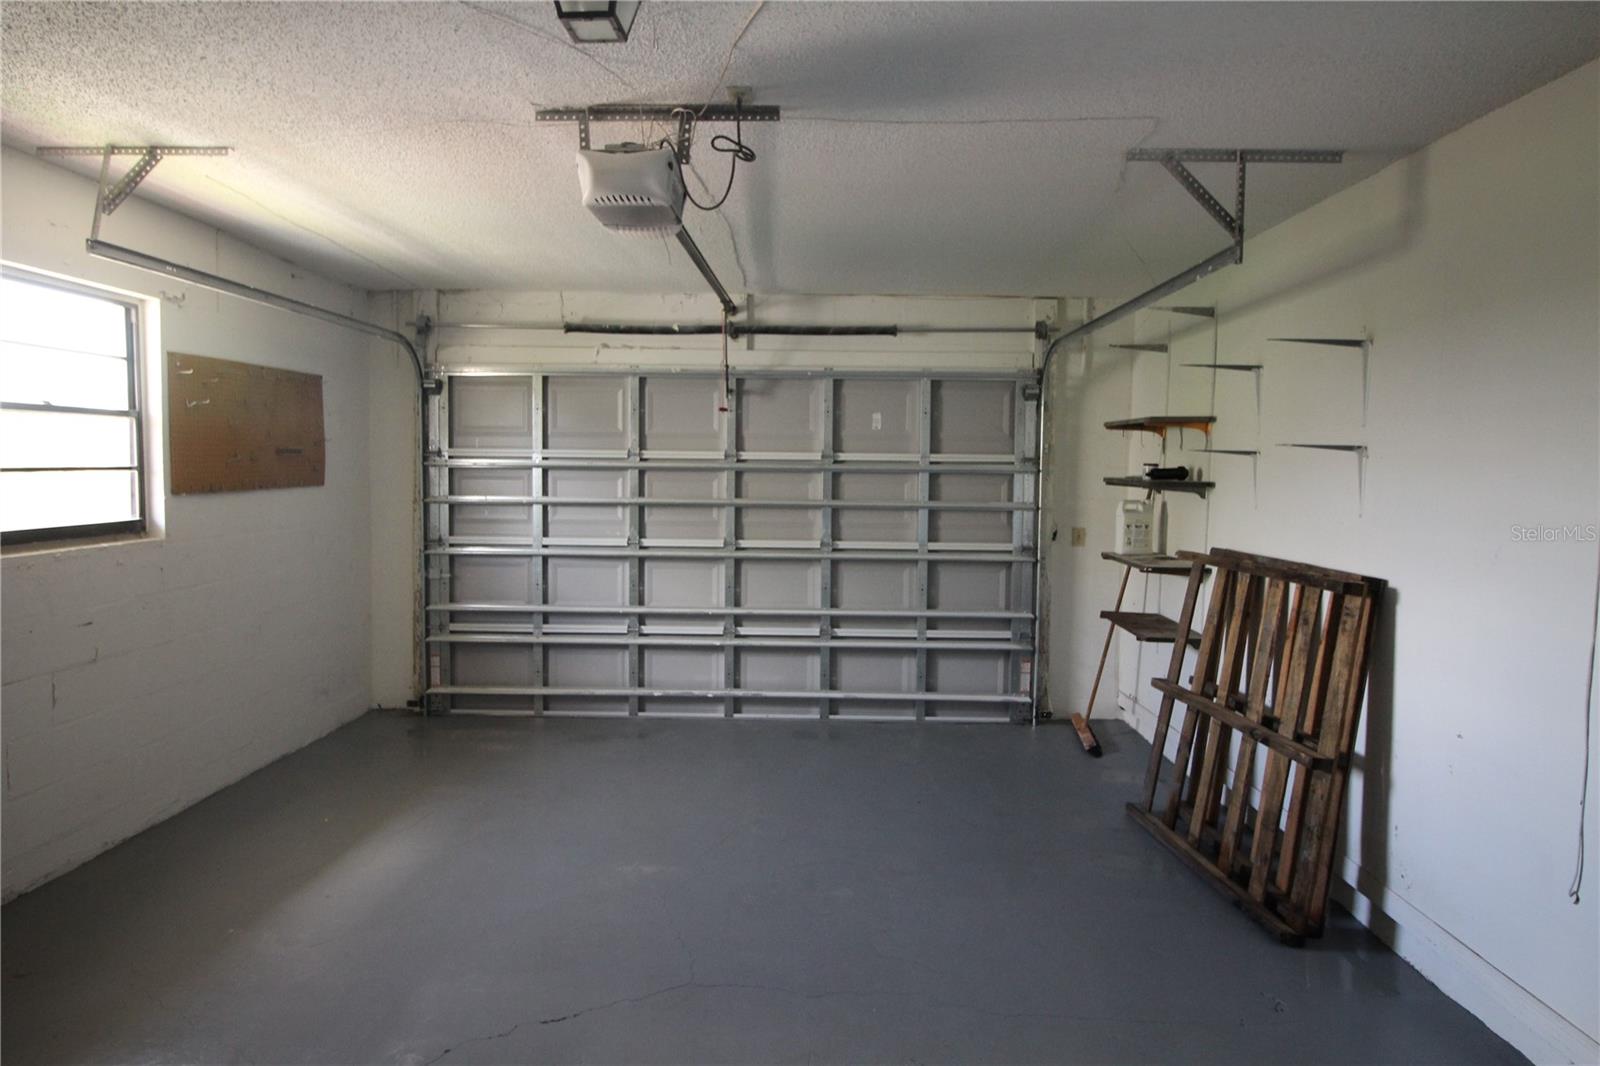 Updated hurricane rated garage door